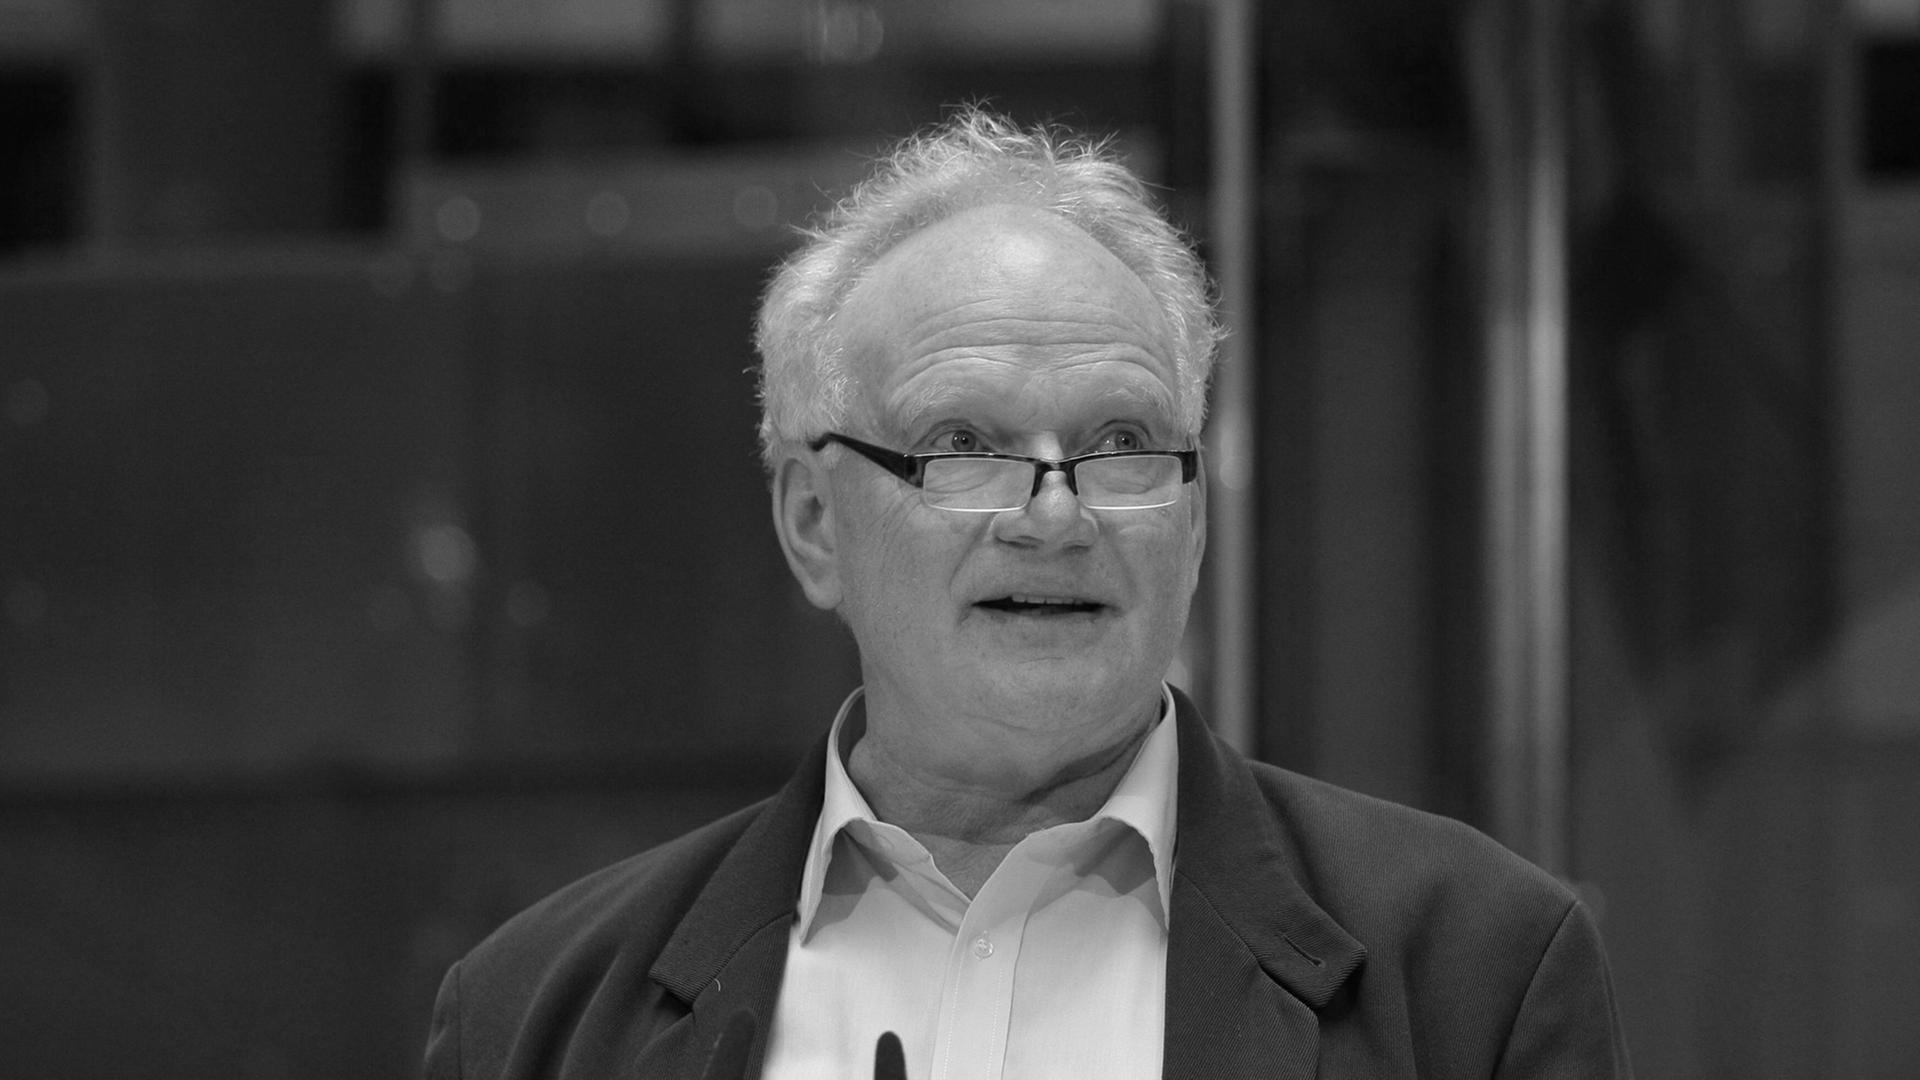 Der Soziologe Ulrich Beck auf einer Veranstaltung im Juni 2013.